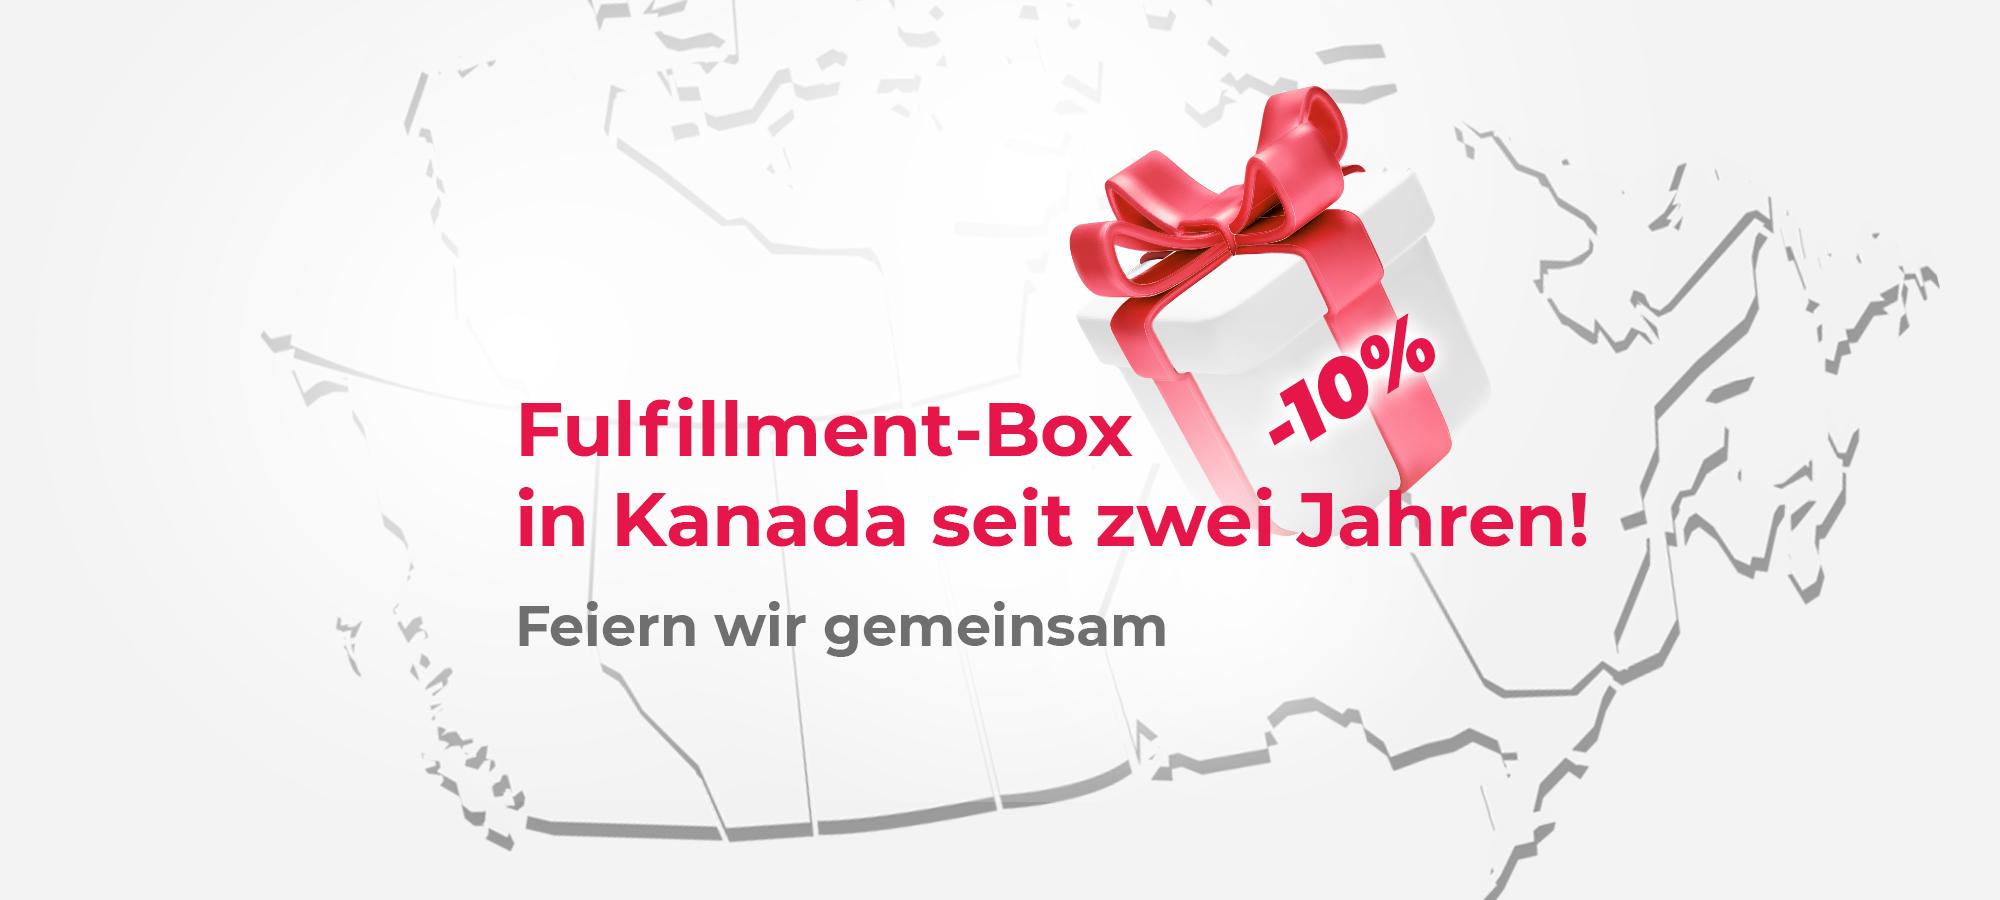 Fulfillment-Box in Kanada feiert sein zweijähriges Geschäftsjubiläum. 10% Rabatt für Neukunden